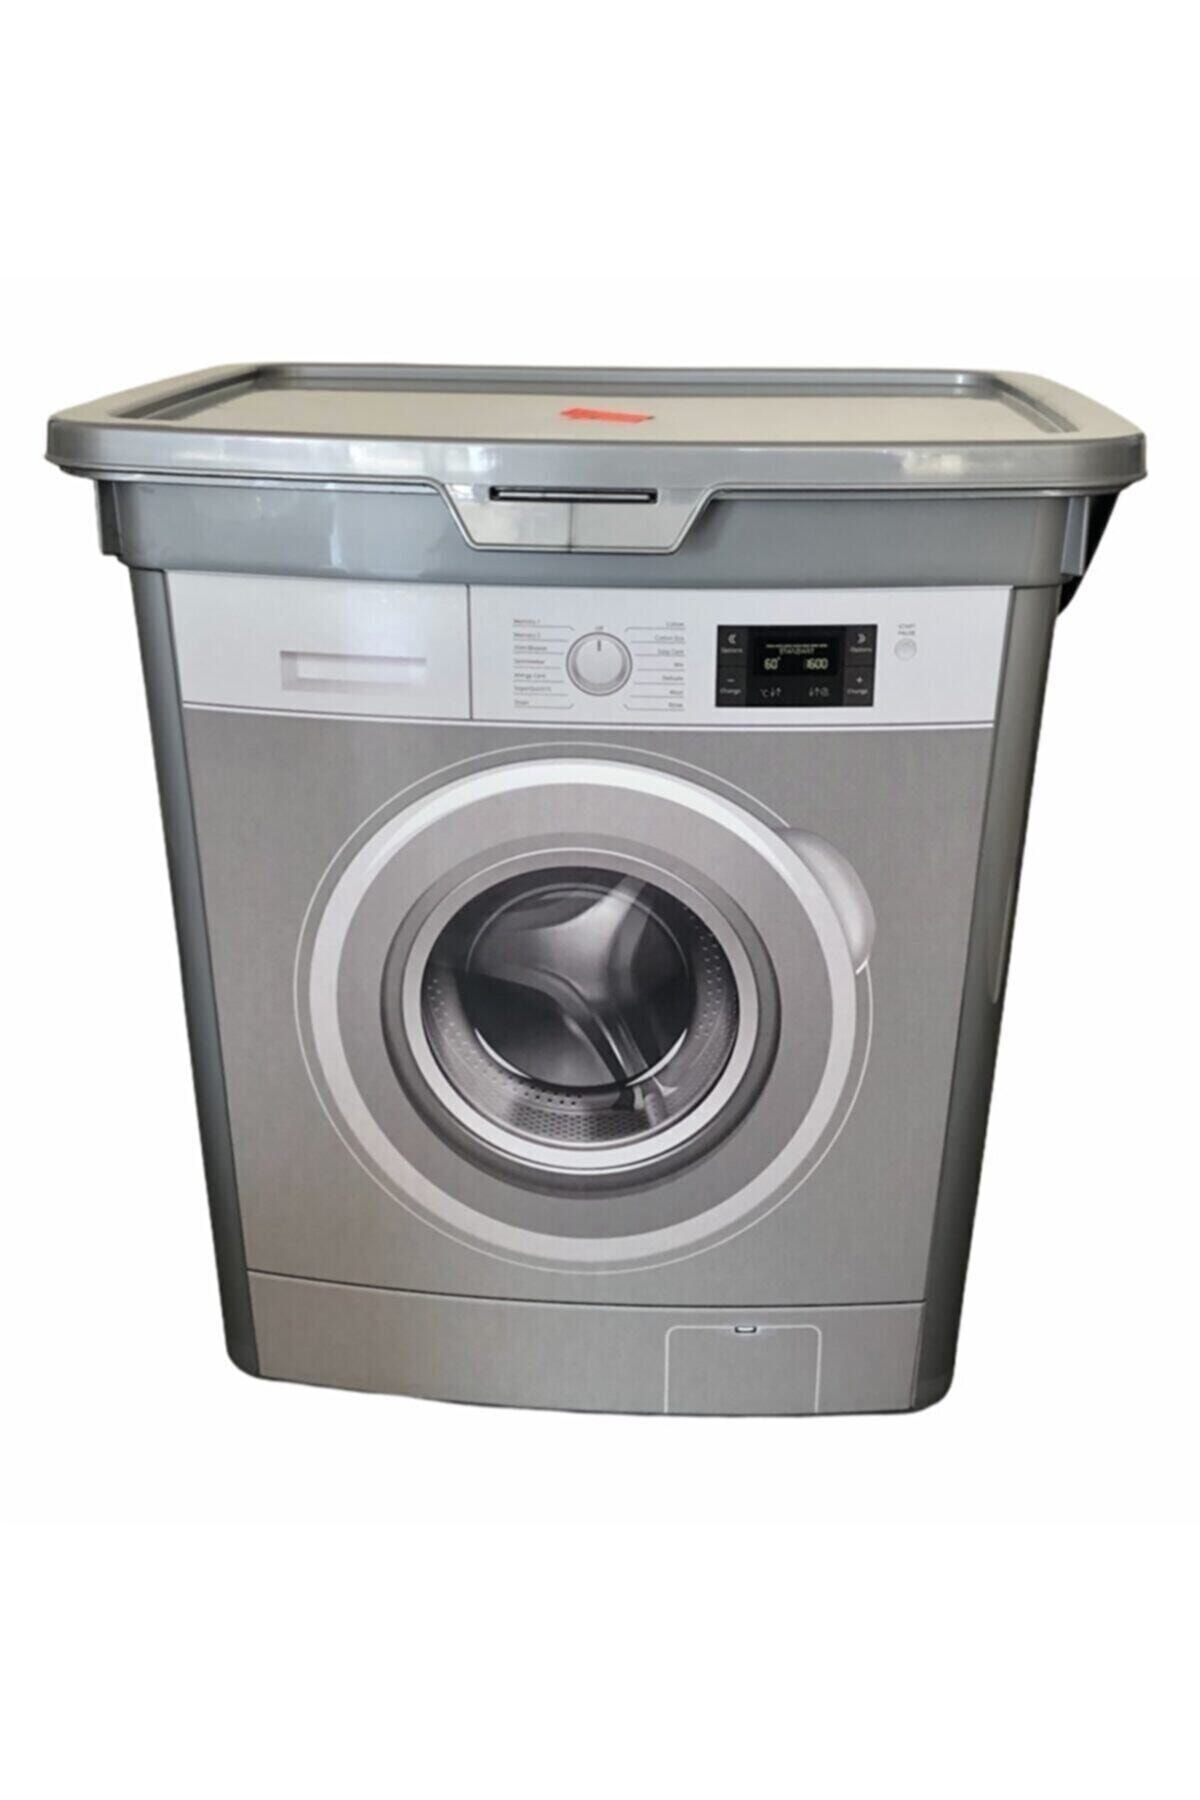 Alamut Home Çamaşır Makinesi Görünümlü Kapaklı Deterjanlık Taşınabilir Deterjan Saklama Kutusu 6 Lt